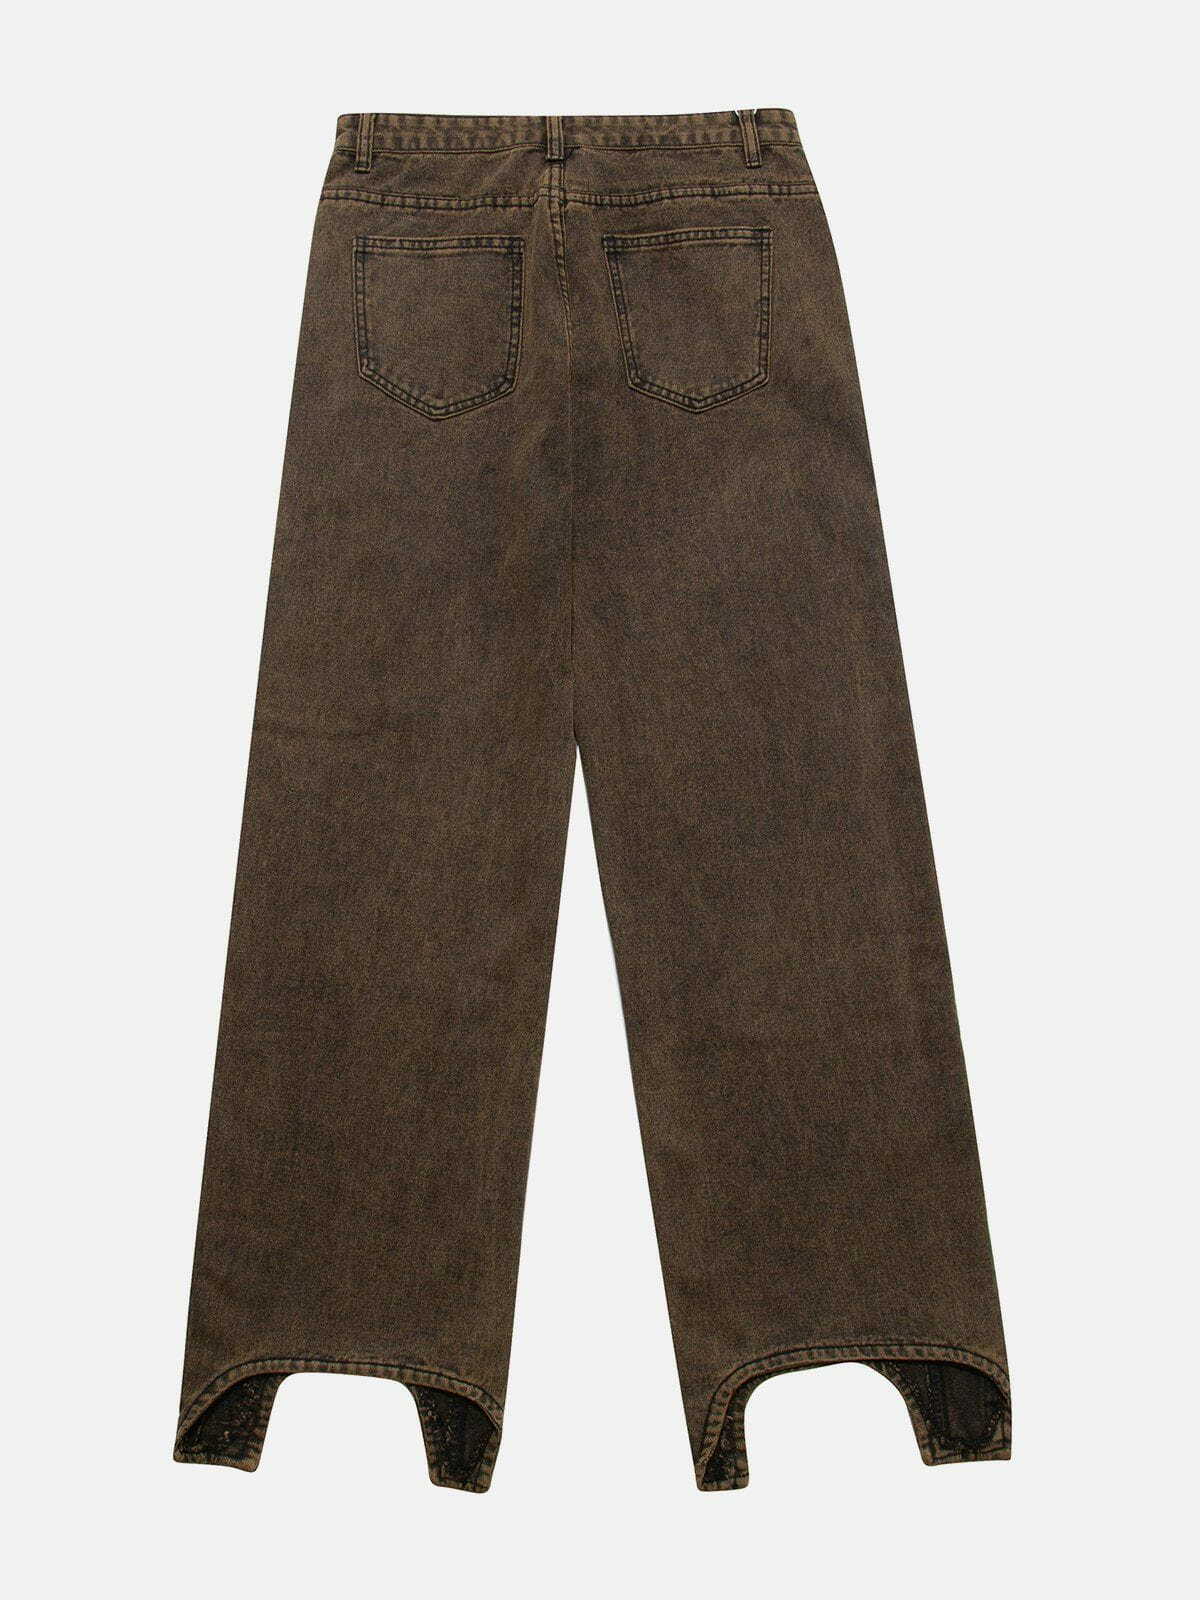 wide leg jeans retro & edgy streetwear 6315